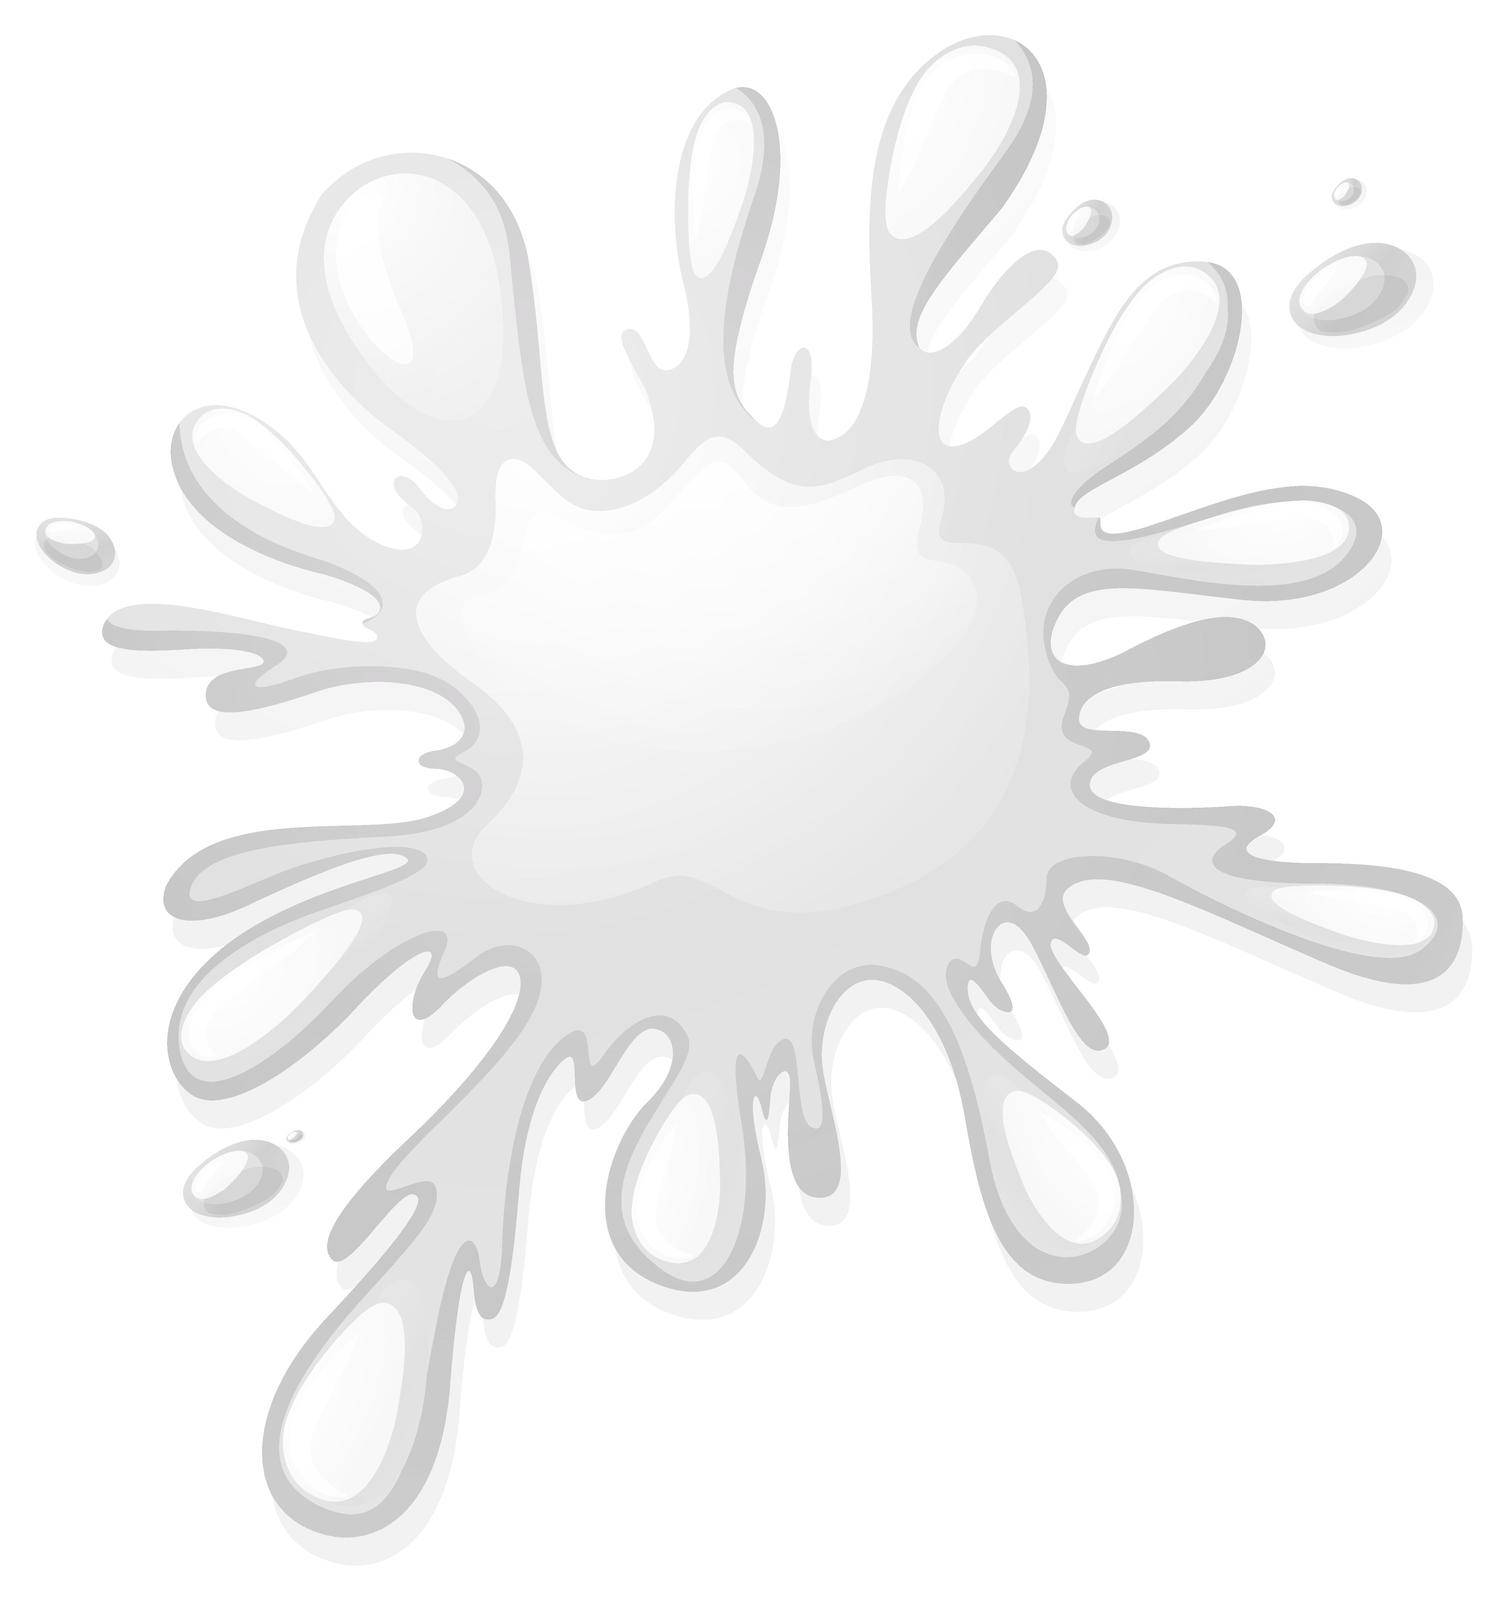 White color splash on white illustration